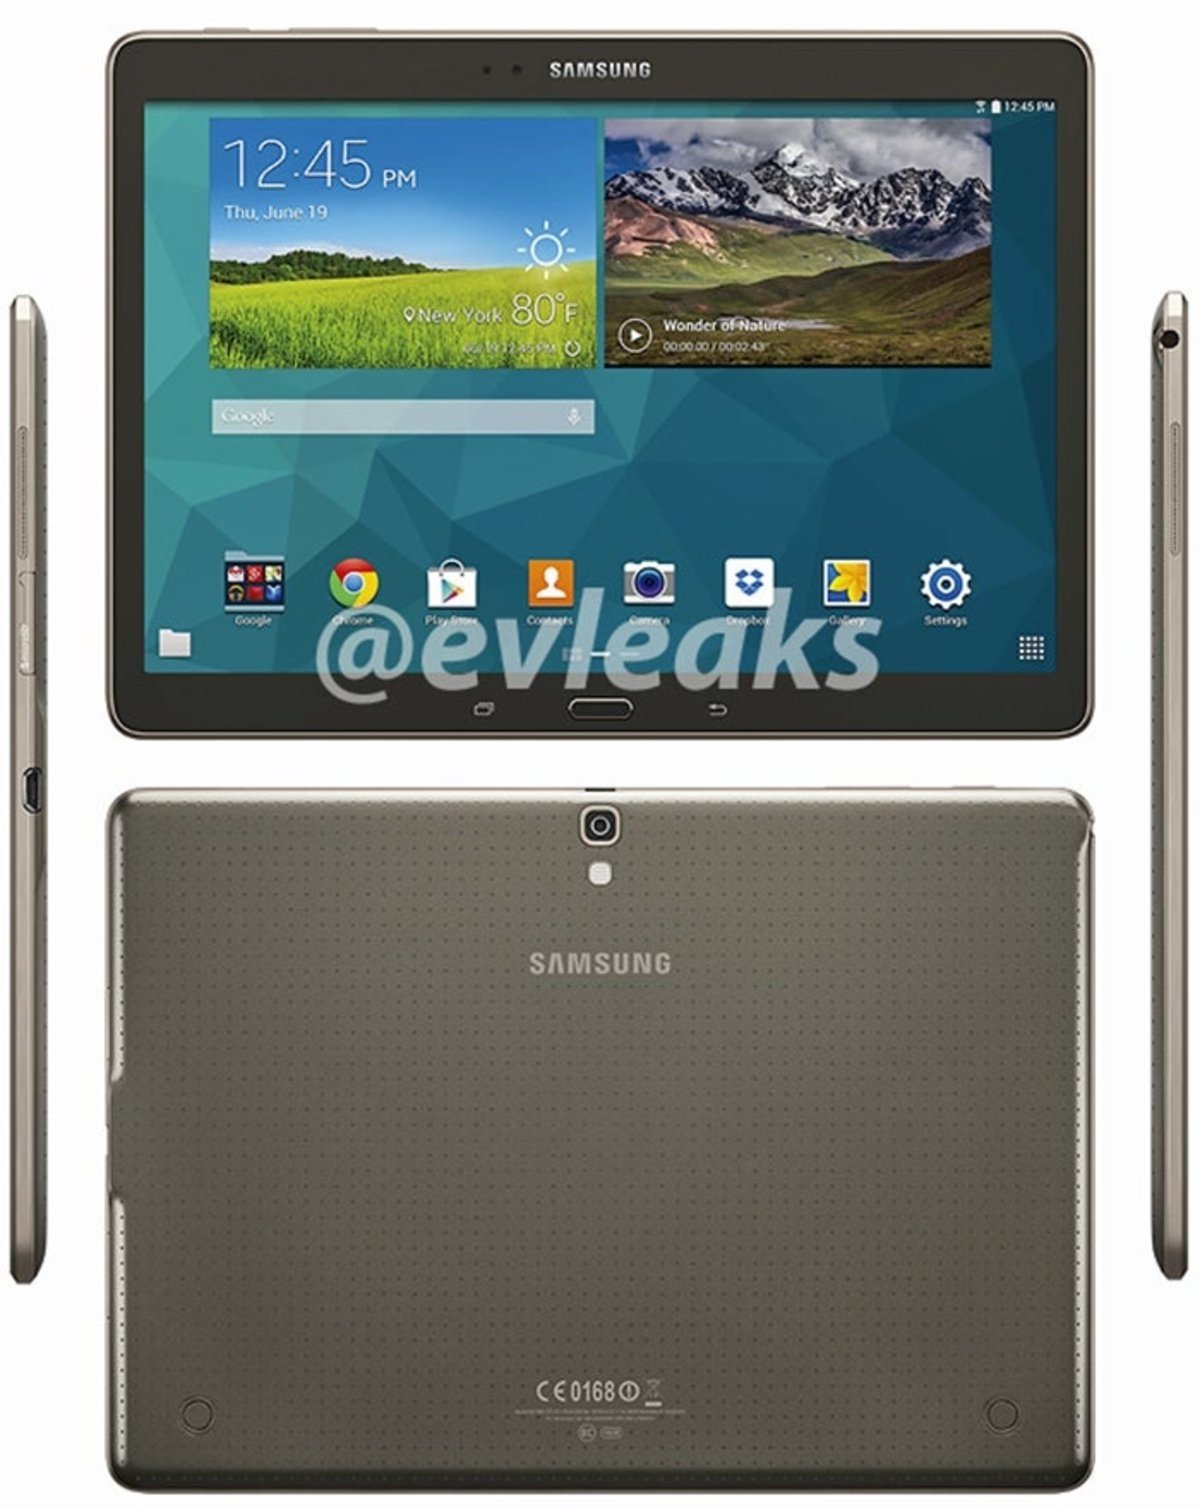 Render filtrado de la Samsung Galaxy Tab S 10.5